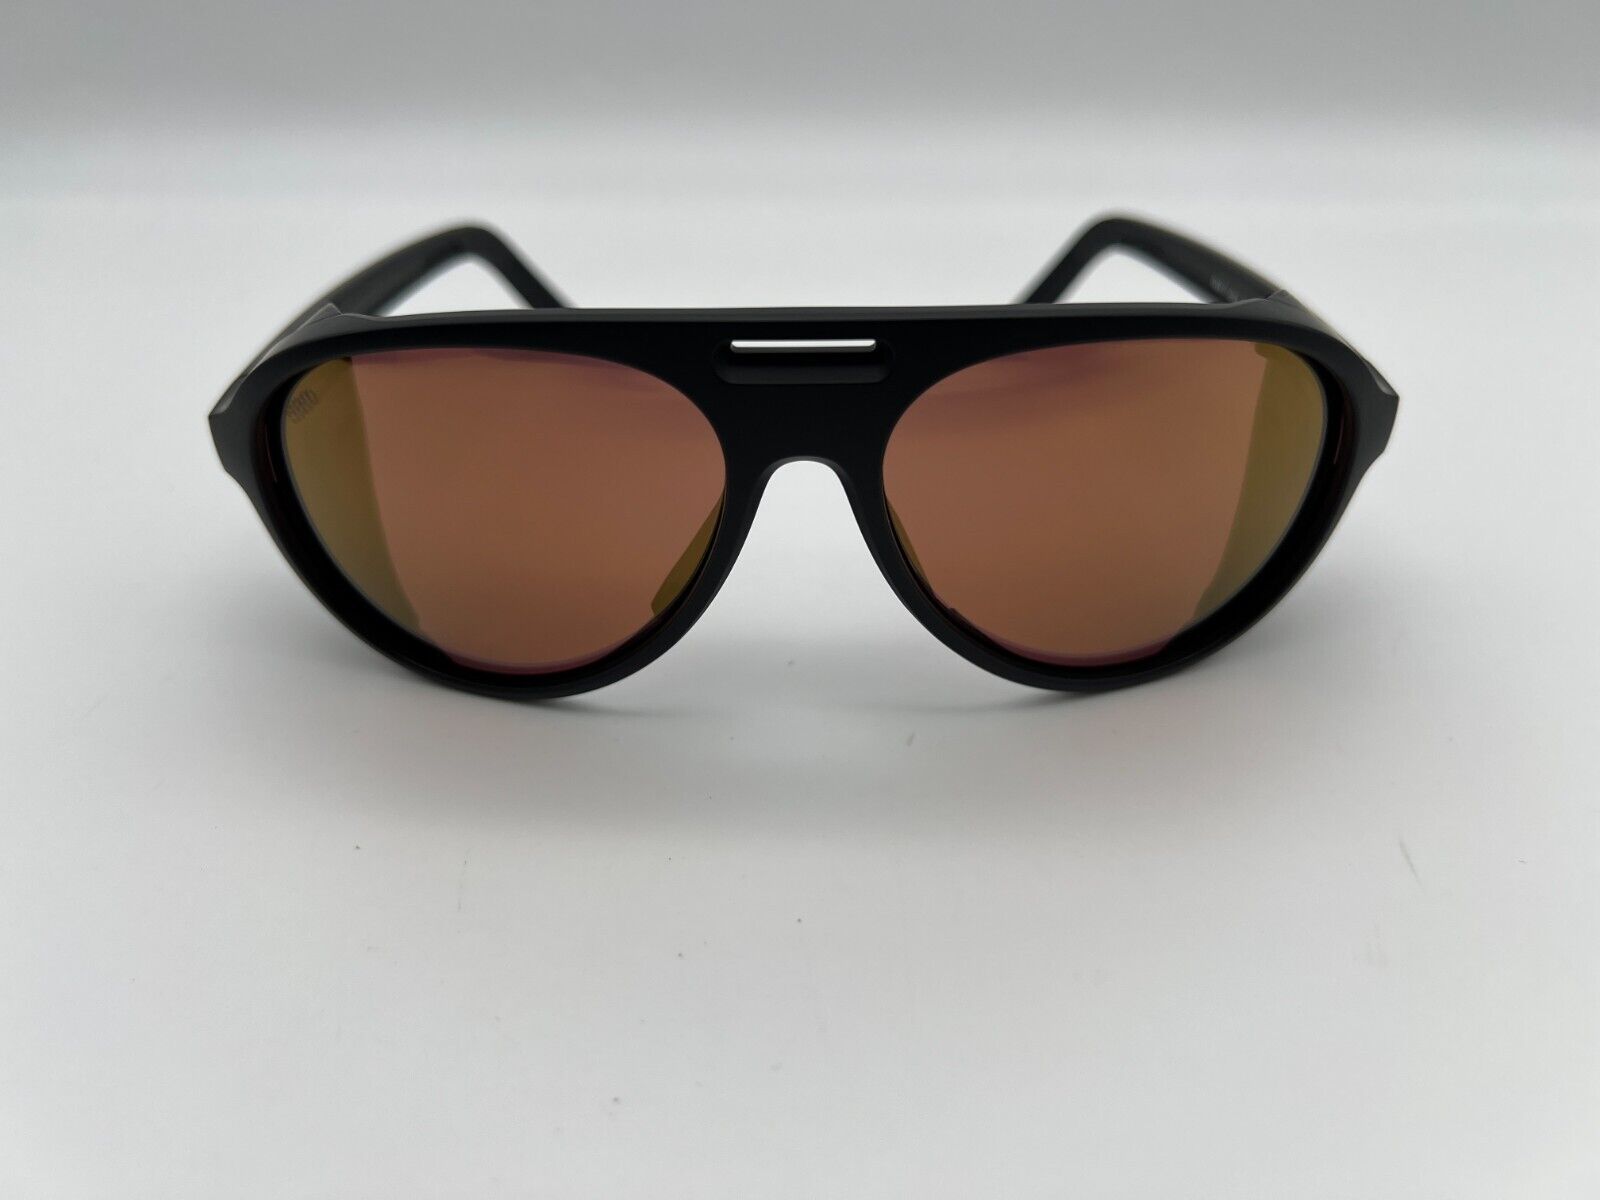 NEW Costa Del Mar GRAND CATALINA Polarized Sunglasses Black/Gold Mirror Glass